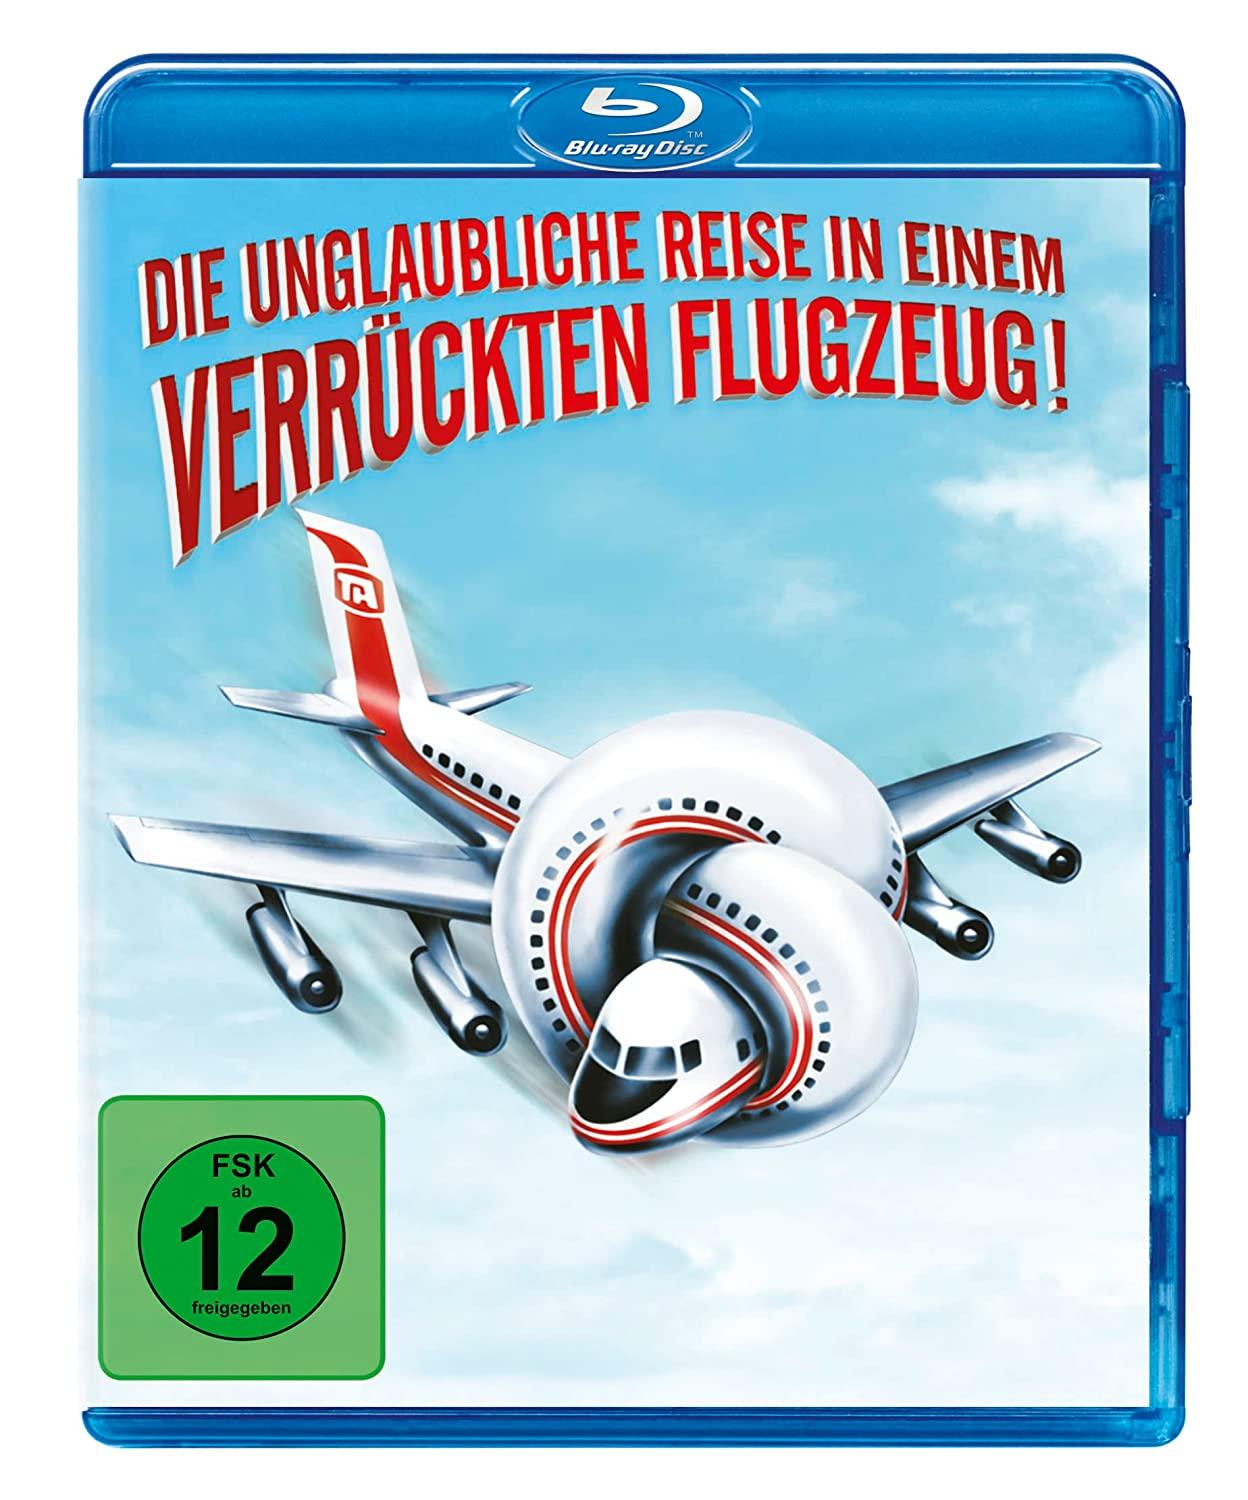 dvd 02 23 Verr Flugzeug Zucker